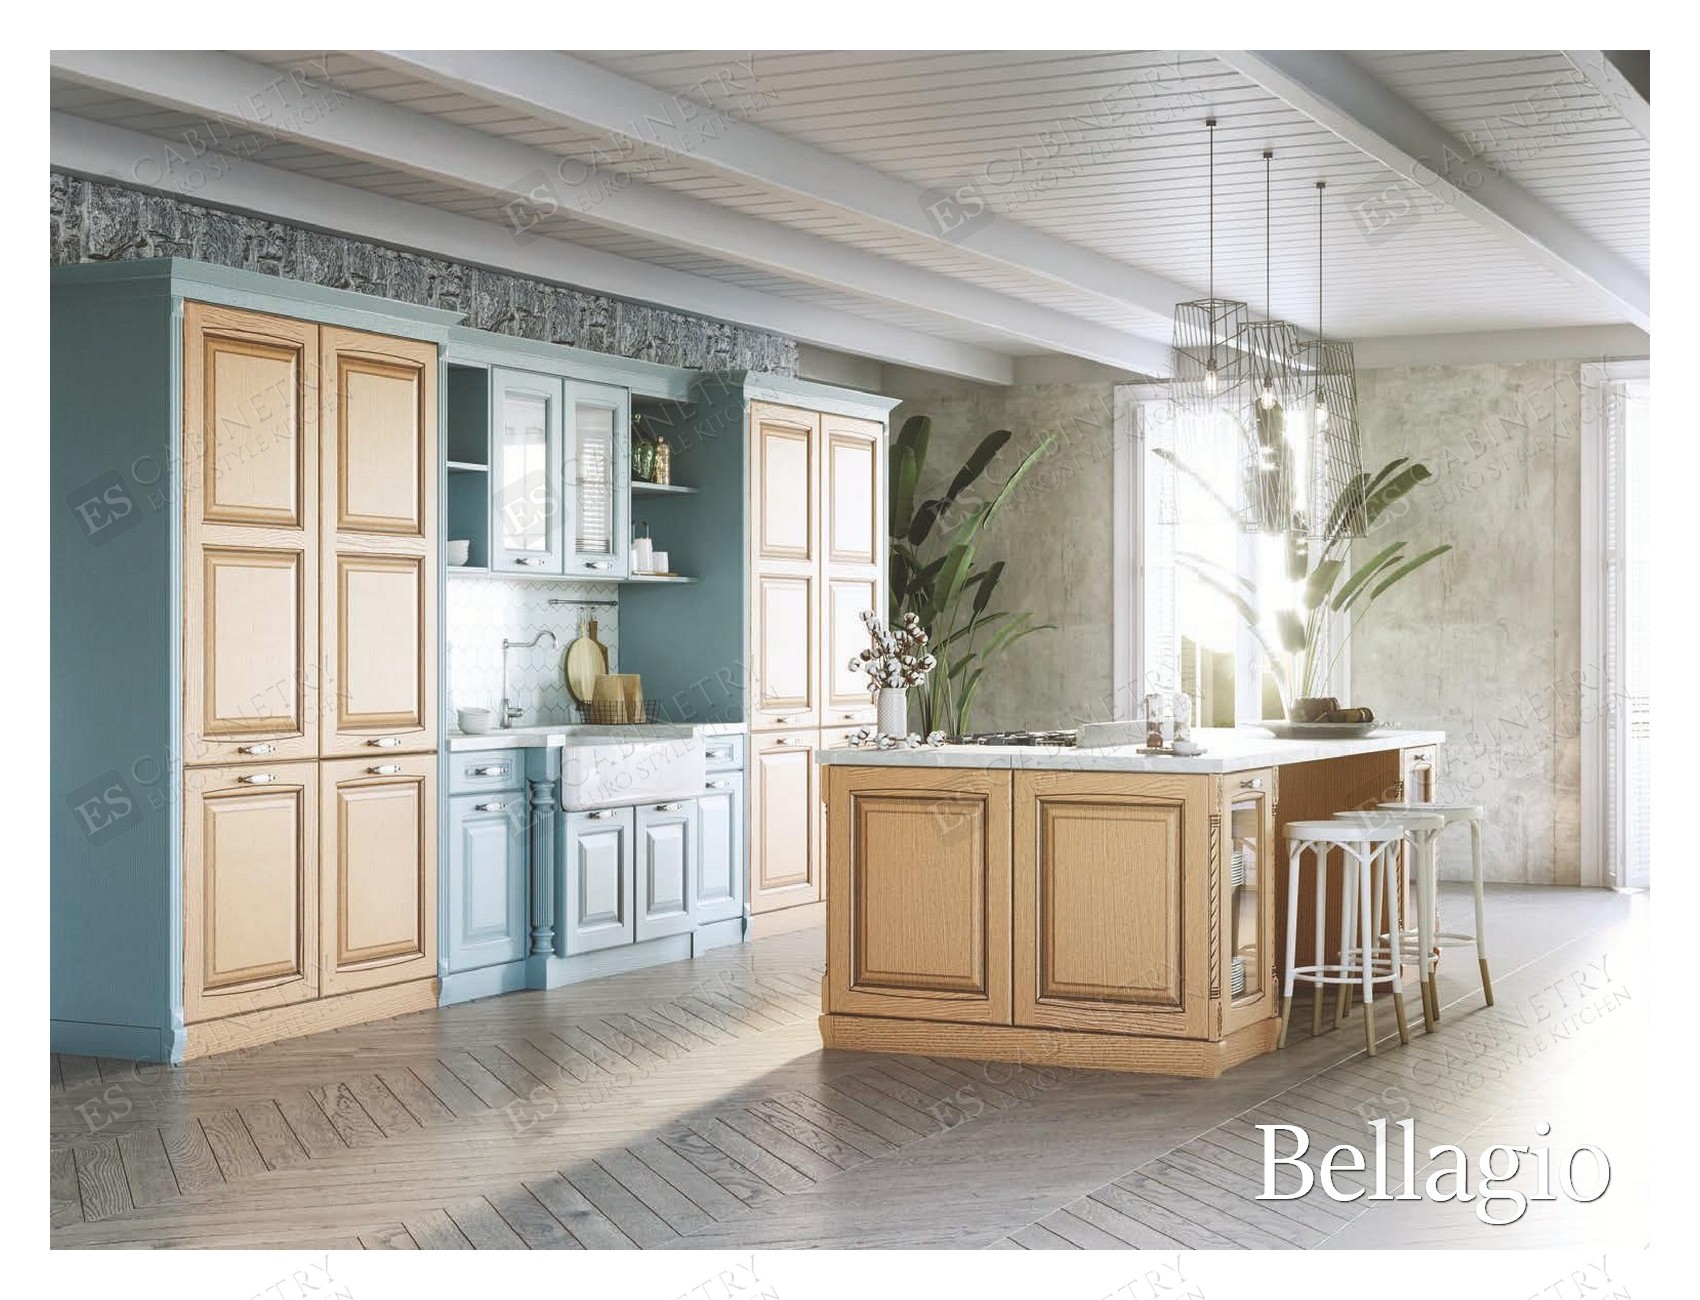 Bellagio | European cabinet design